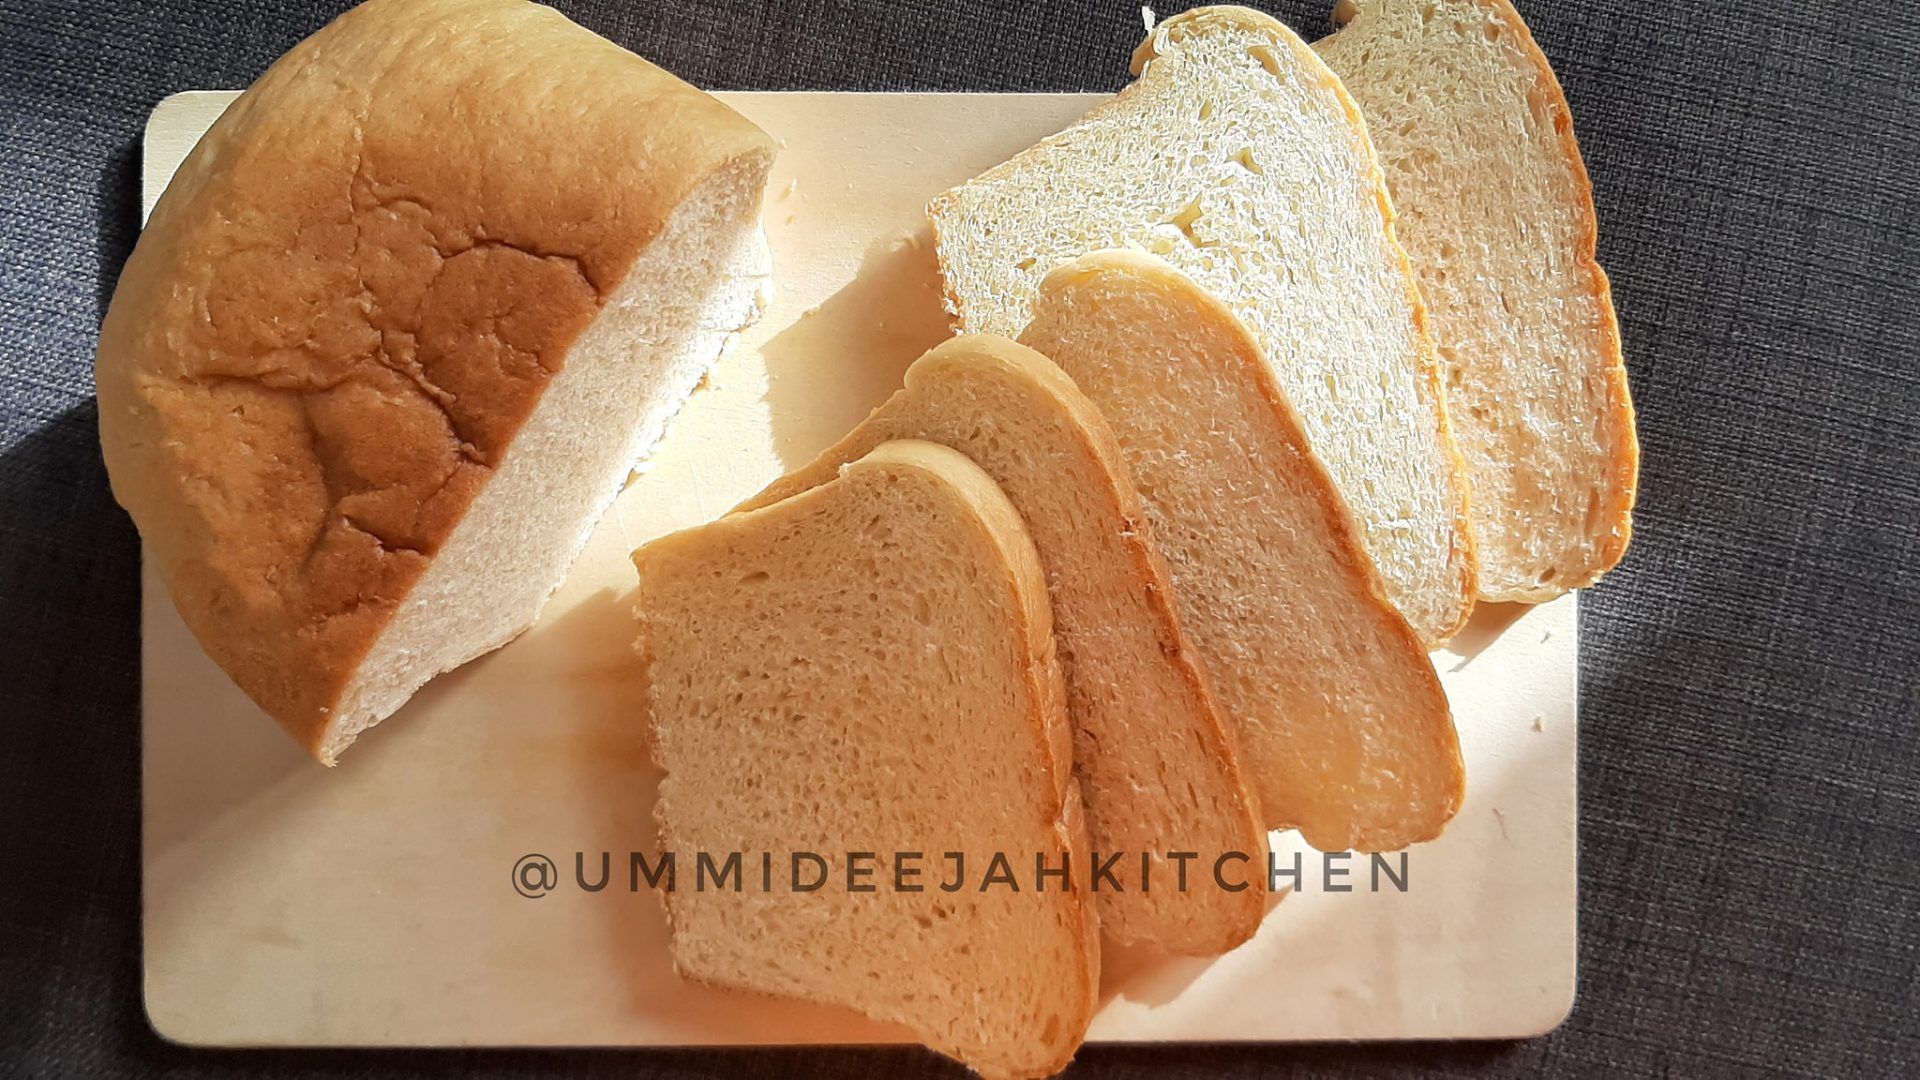 Resepi Roti Yang Sedap Dan Senang, Hanya 5 Bahan, Tanpa Telur, Tak Perlu Guna Mixer Dan Breadmaker!